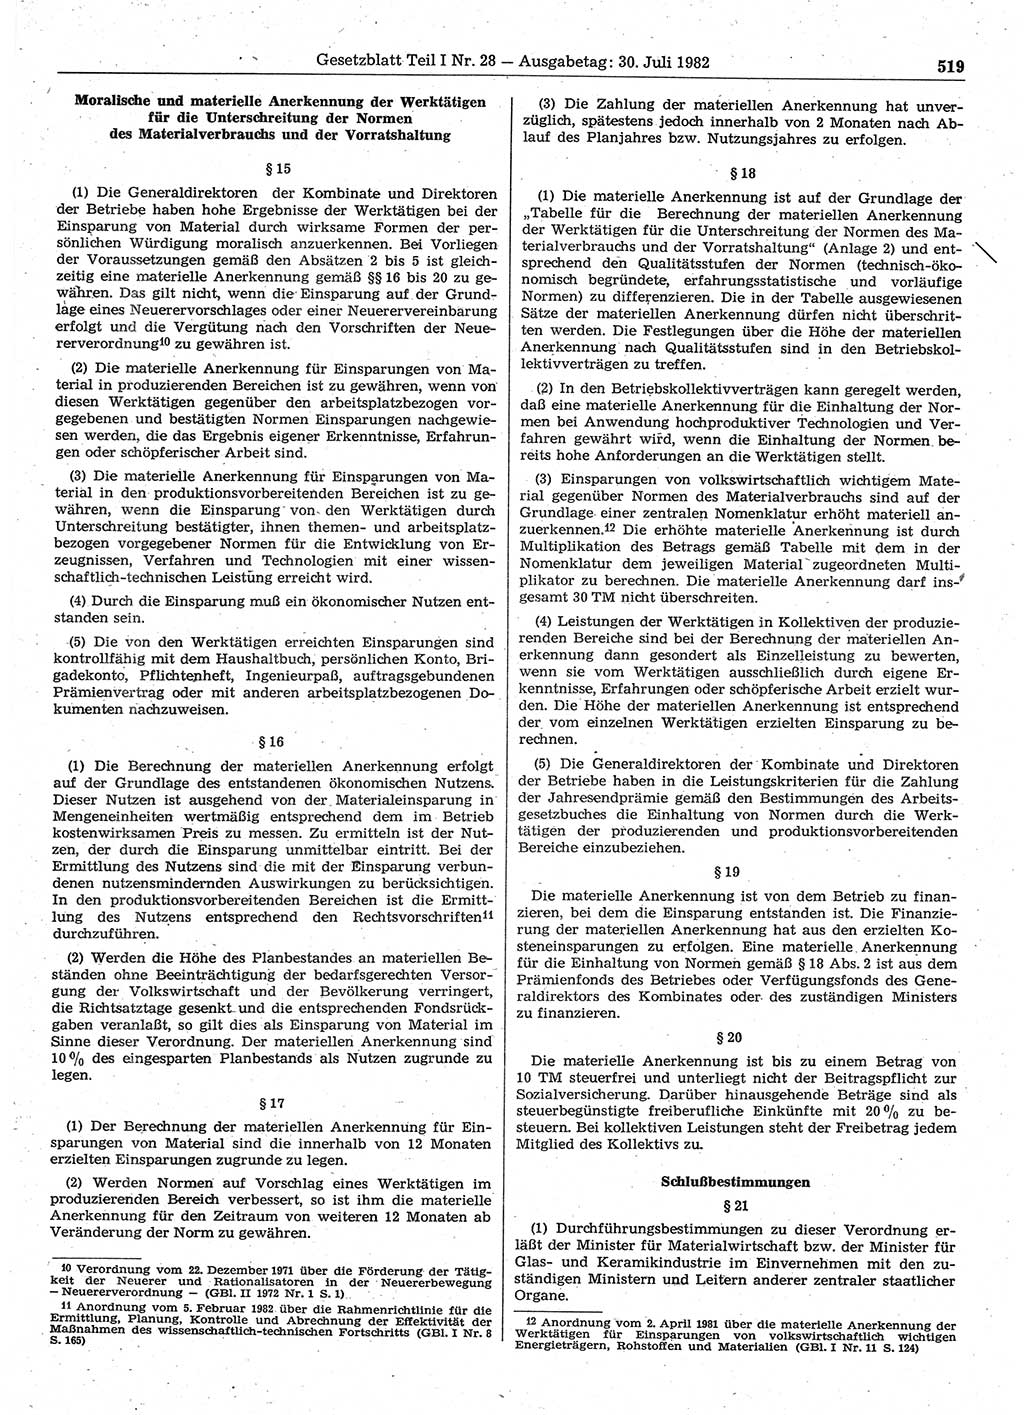 Gesetzblatt (GBl.) der Deutschen Demokratischen Republik (DDR) Teil Ⅰ 1982, Seite 519 (GBl. DDR Ⅰ 1982, S. 519)